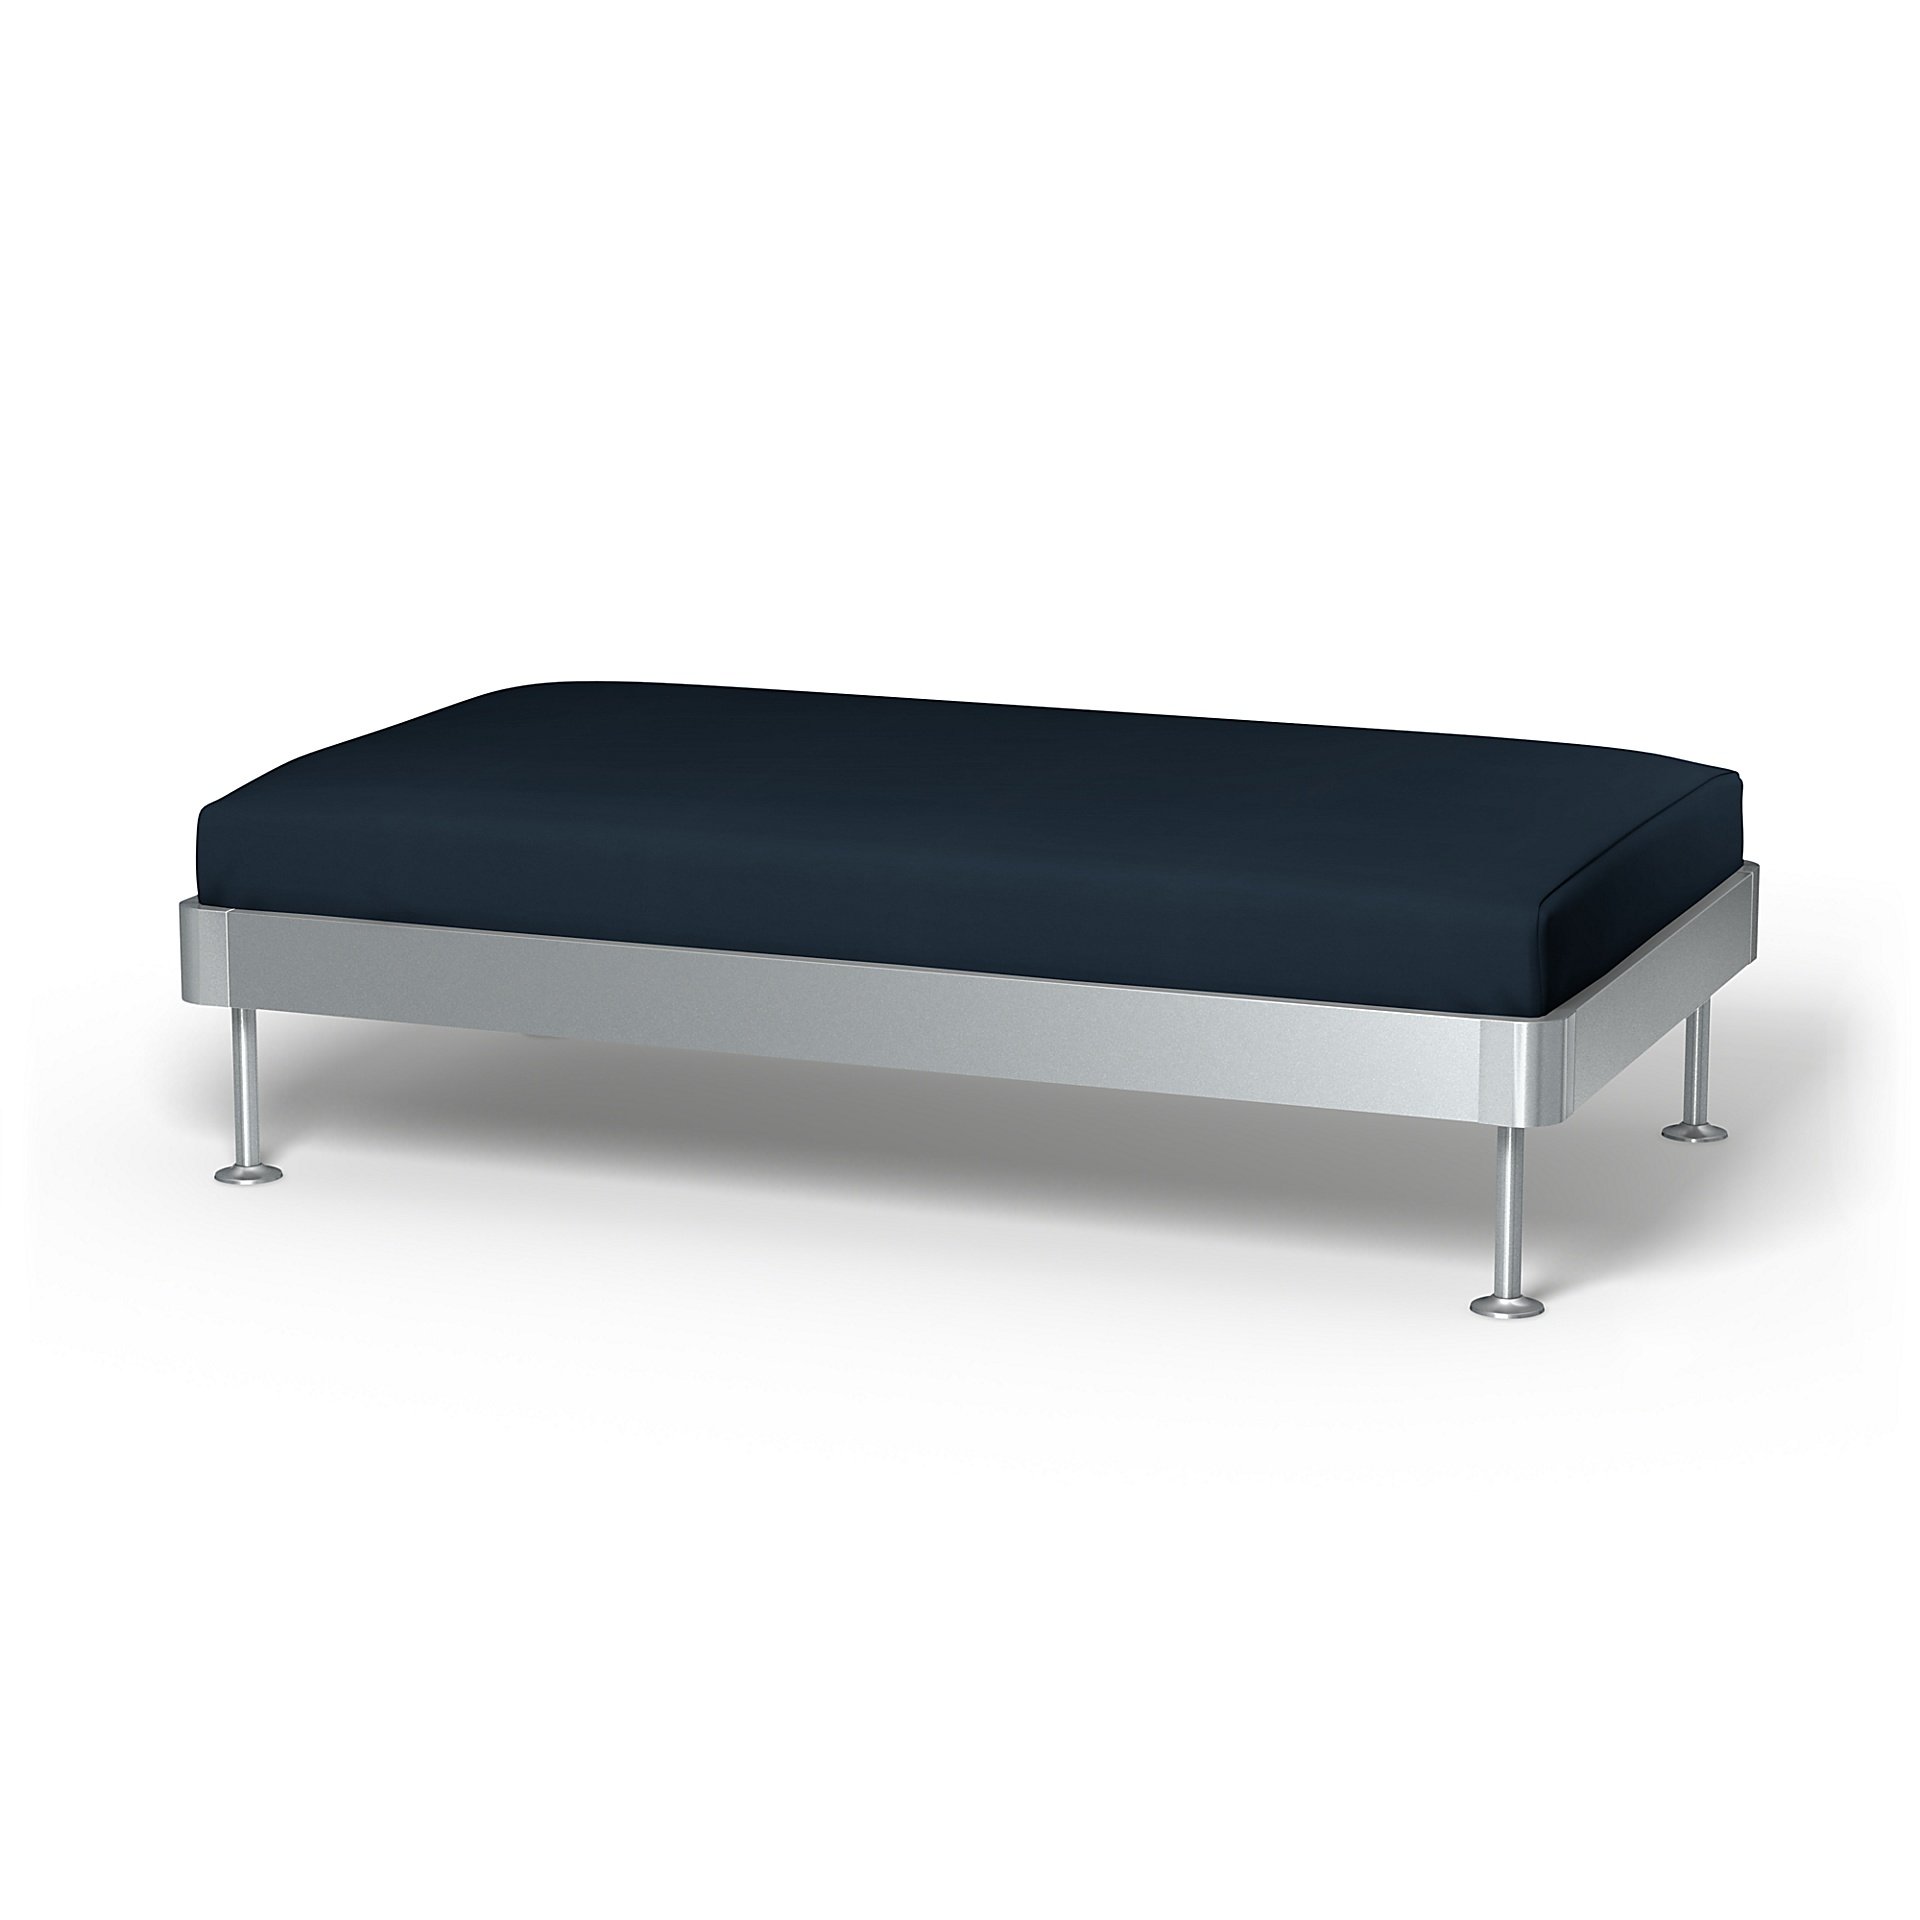 IKEA - Delaktig 2 Seat Platform Cover, Navy Blue, Cotton - Bemz